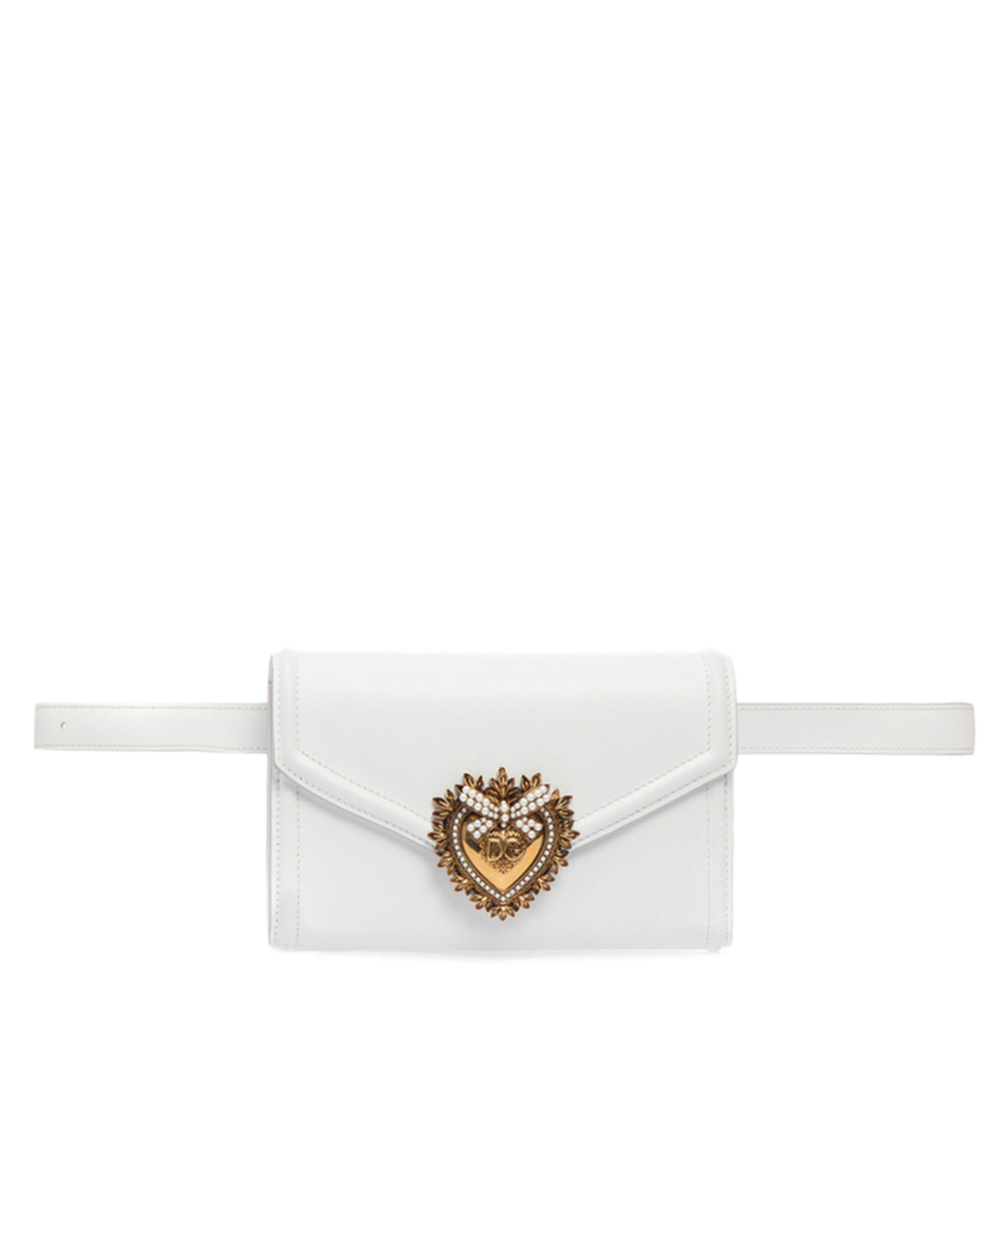 Кожаная поясная сумка Devotion Dolce&Gabbana BB6706-AV893, белый цвет • Купить в интернет-магазине Kameron